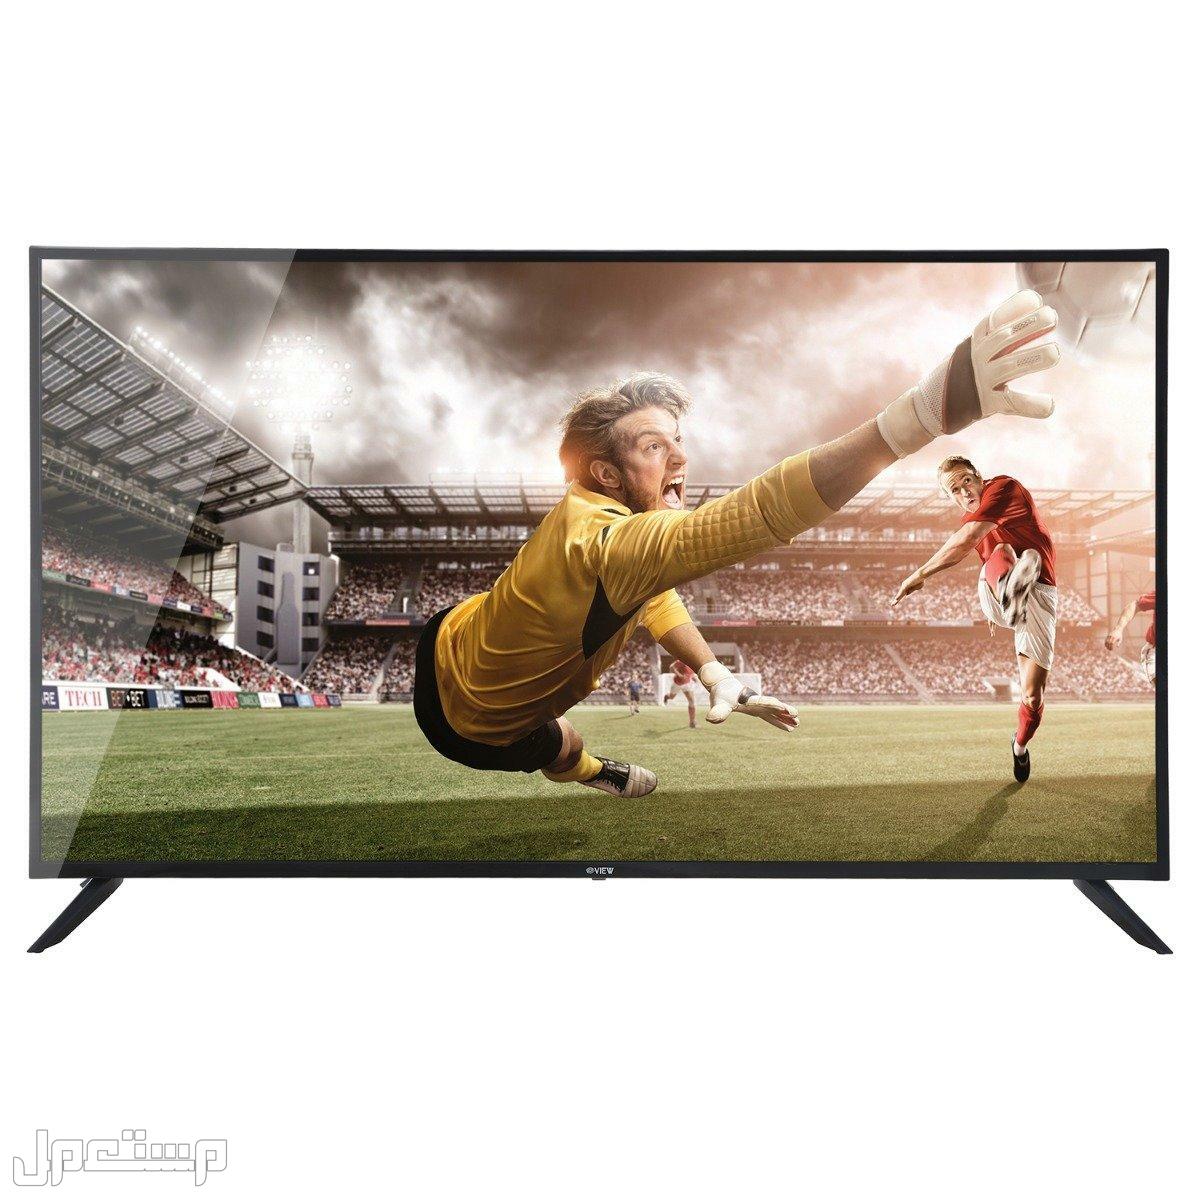 أرخص شاشات تلفزيون يمكنك شرائها (دليلك الكامل) في عمان ارخص شاشات تلفزيون